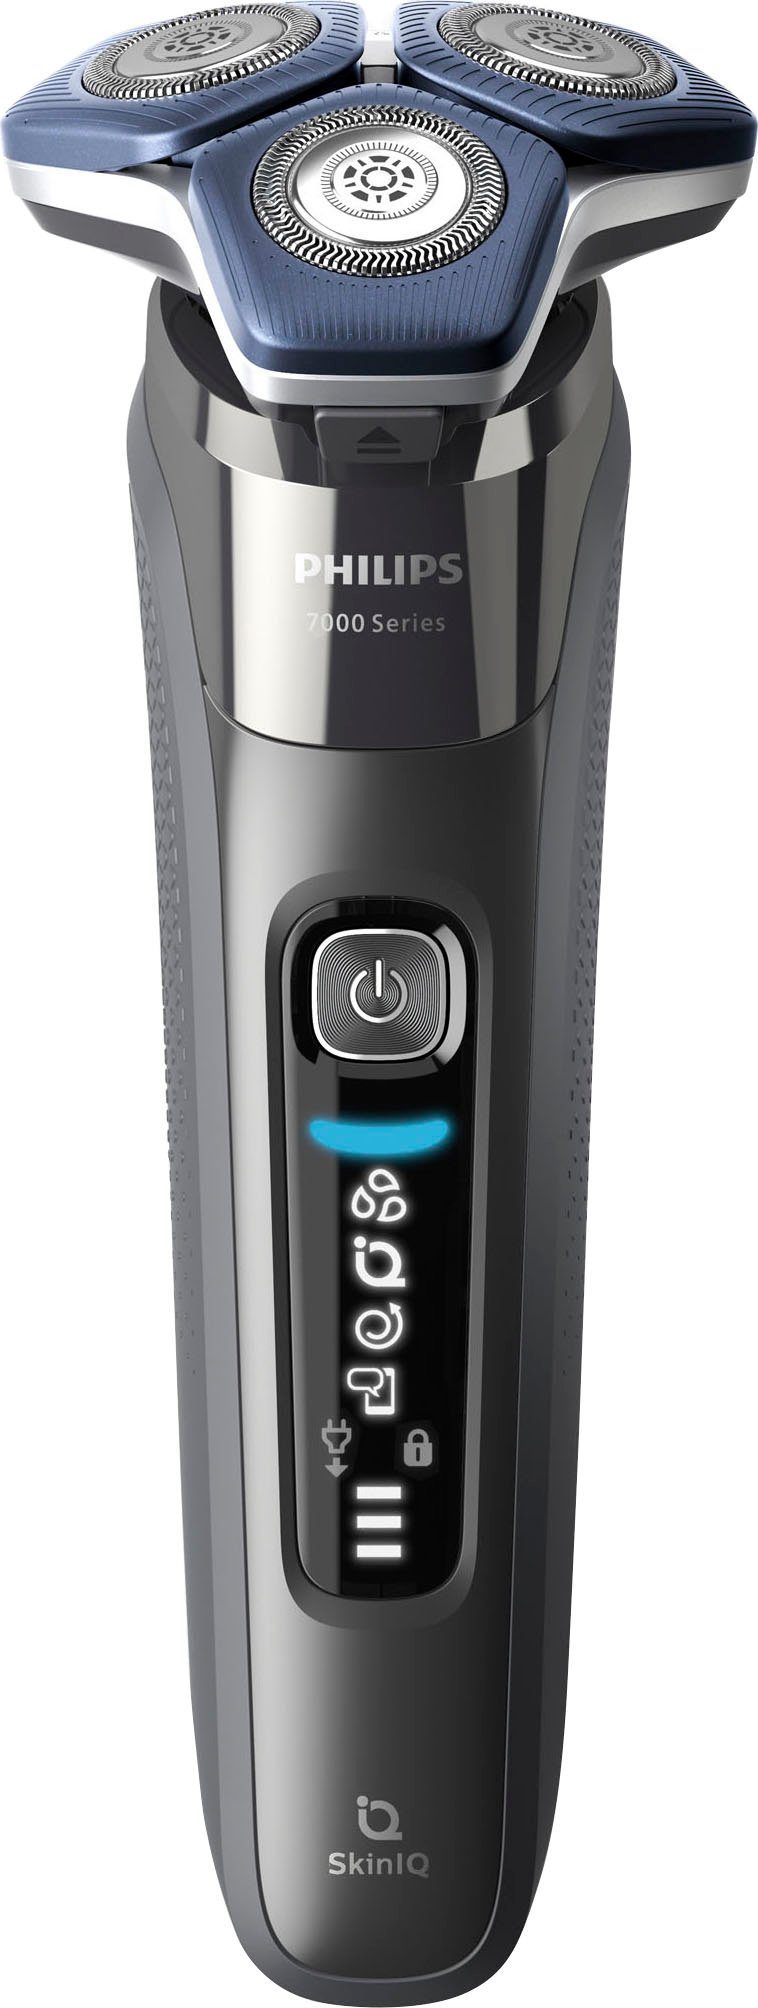 Philips Elektrorasierer Shaver Series mit 4 Technologie SkinIQ Reinigungsstation, Ladestand, 7000 Reinigungskartuschen, Präzisionstrimmer, S7887/63, ausklappbarer Etui